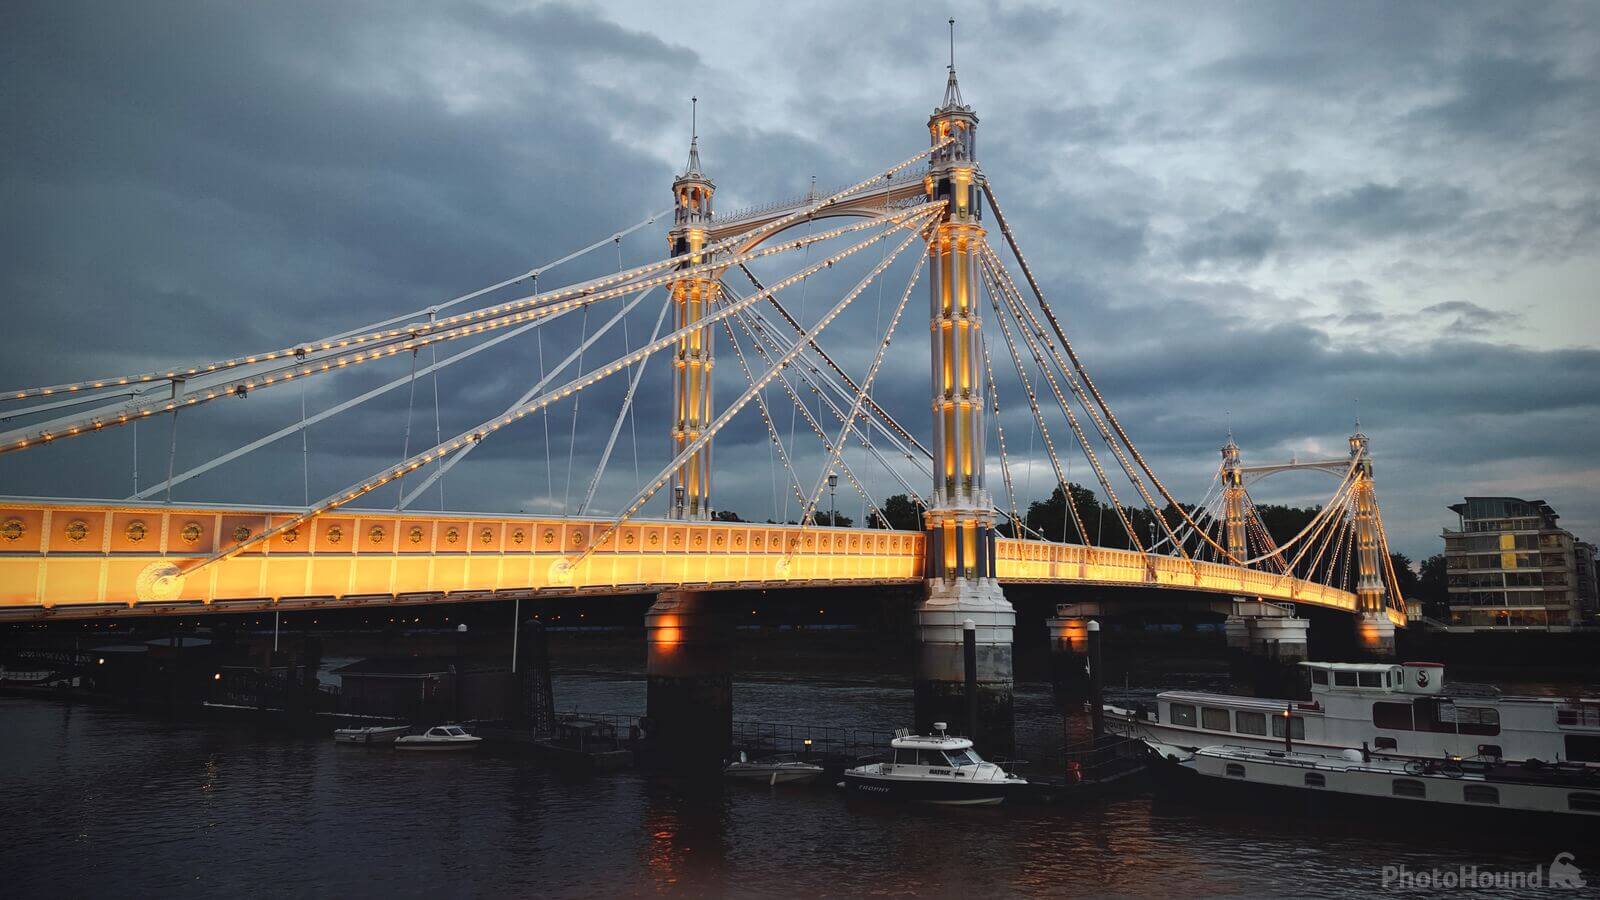 Image of Albert Bridge by Team PhotoHound